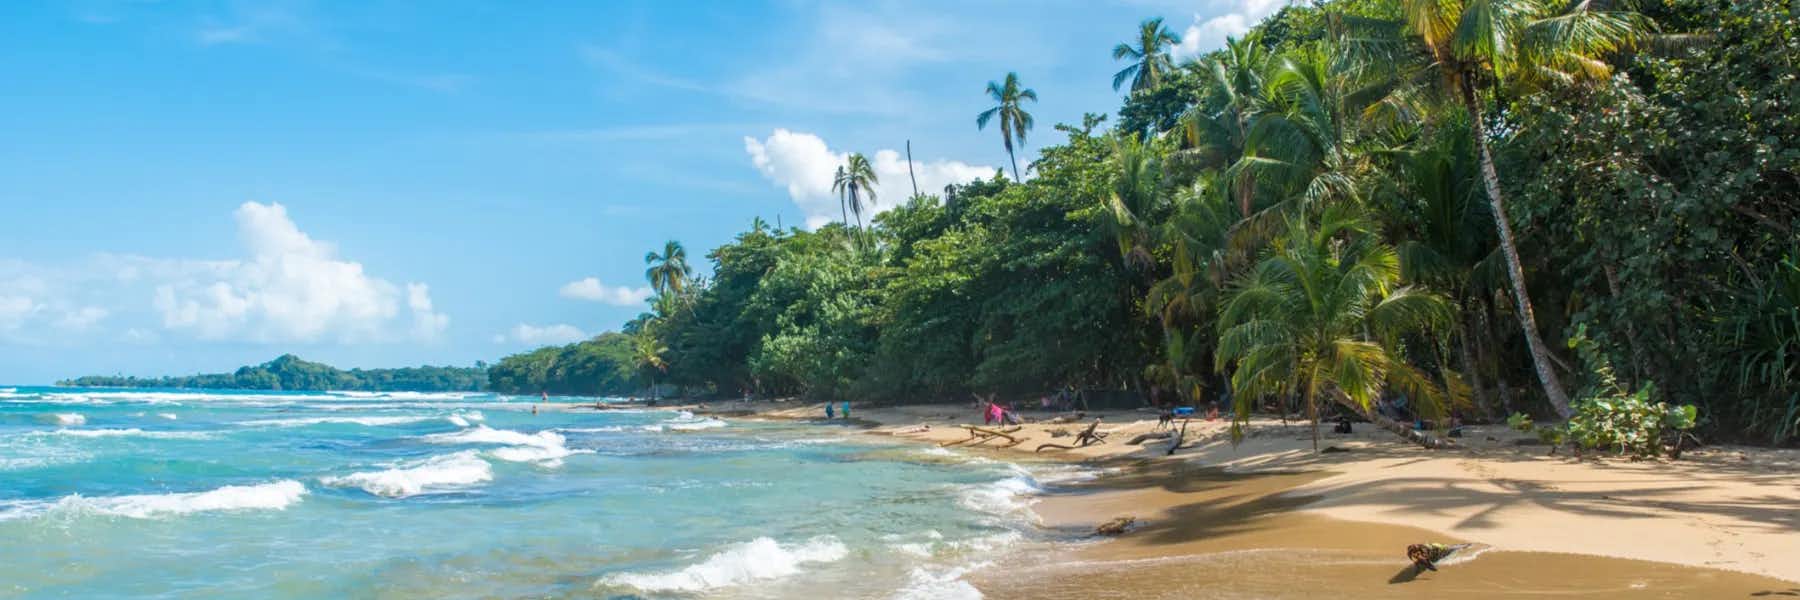 The 5 Best Beaches in Costa Rica